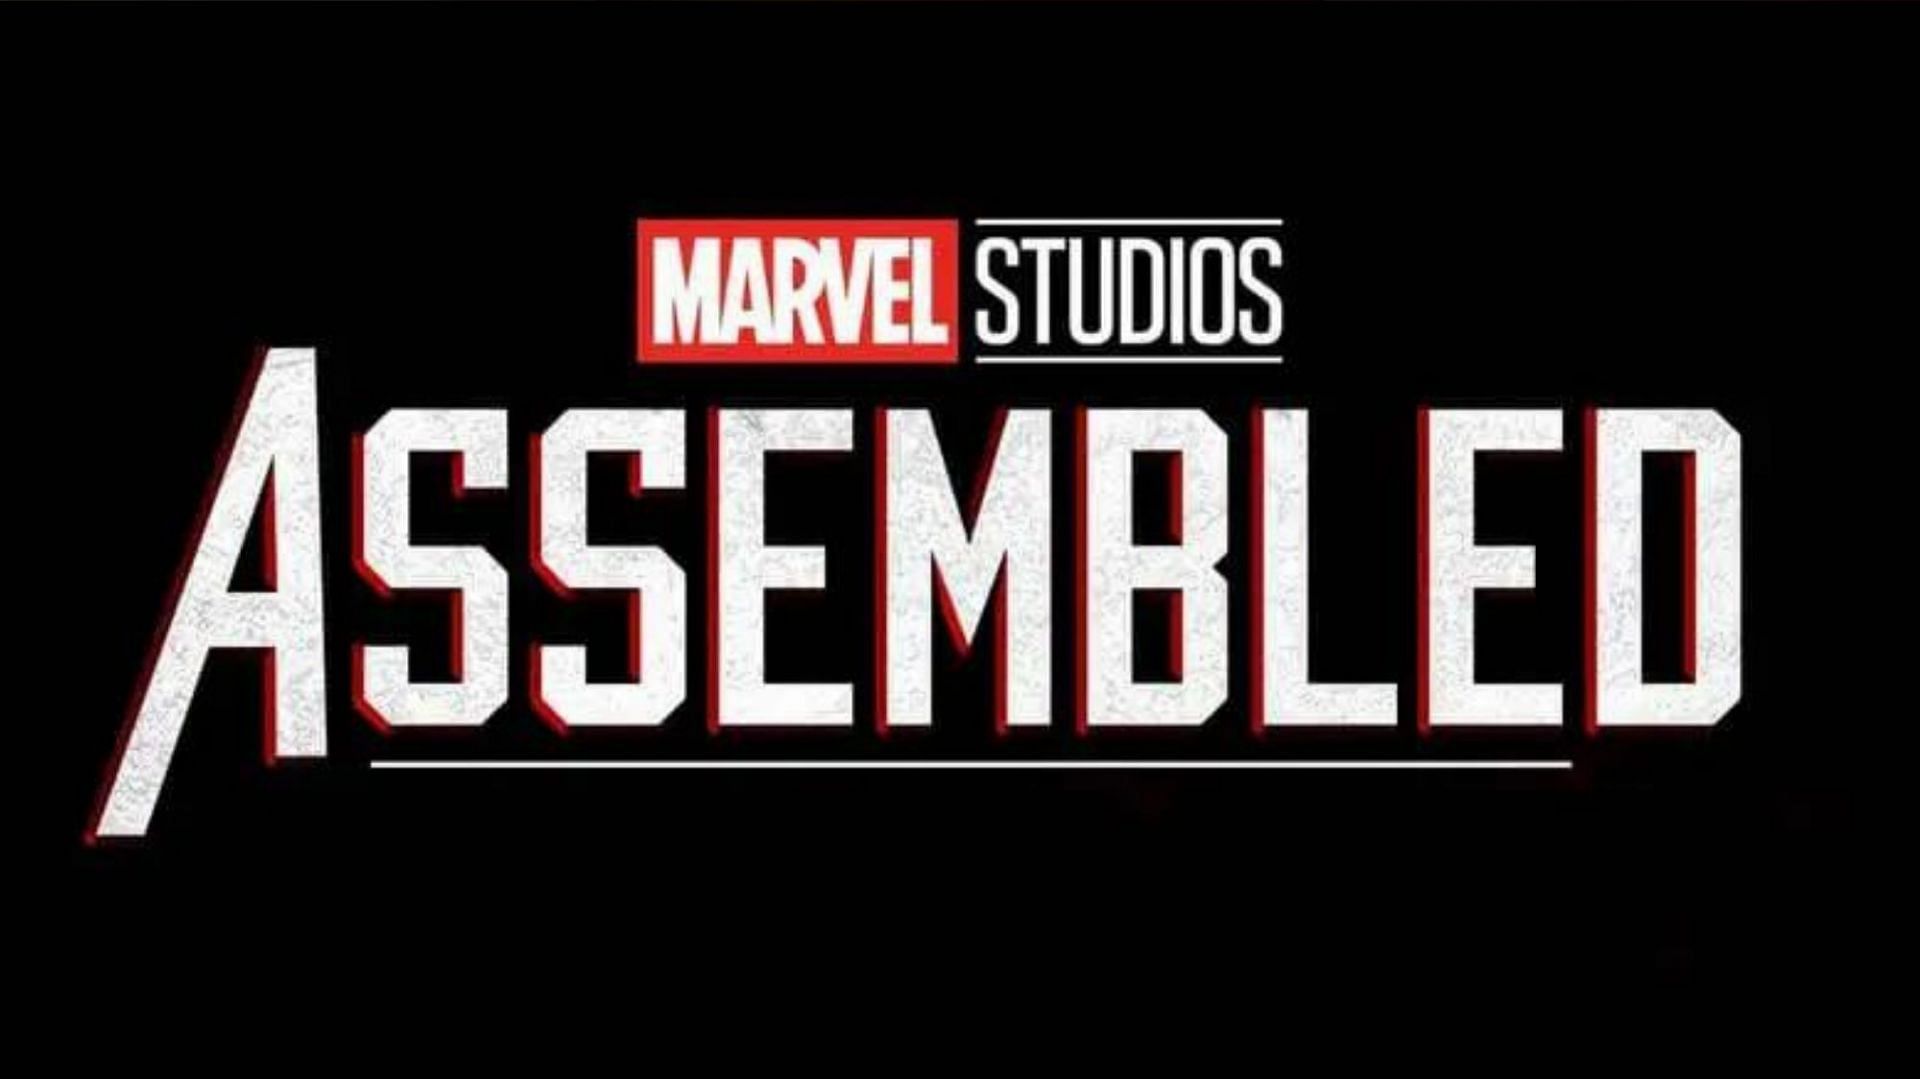 Marvel Studios: Assembled (Image via Marvel)